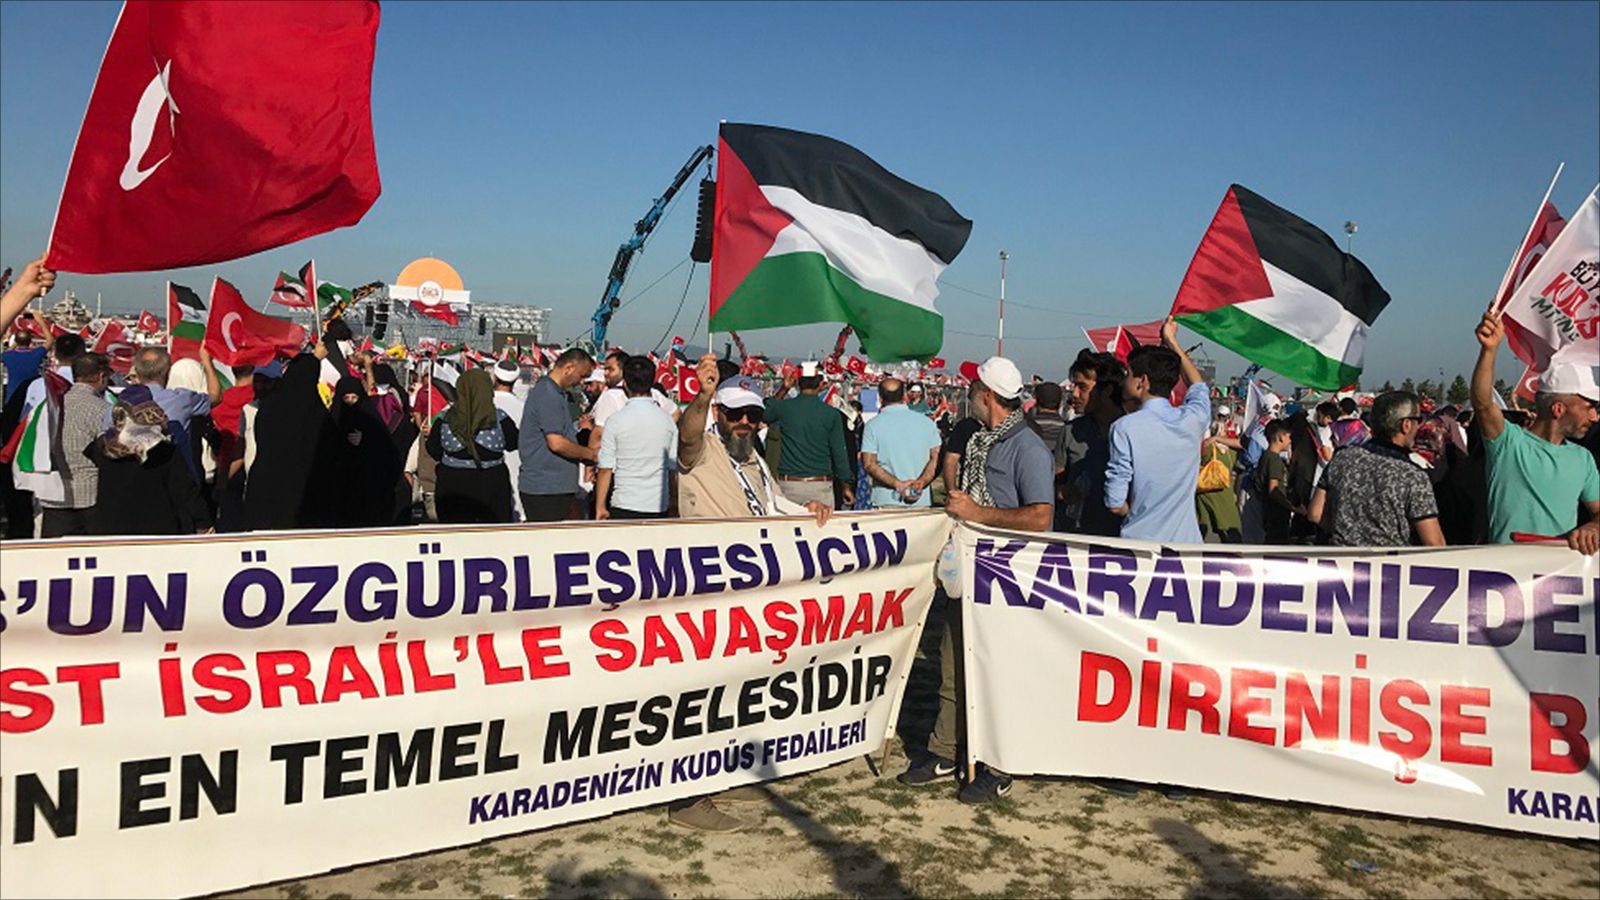 المشاركون في التجمع المليوني رفعوا لافتات تدين إسرائيل